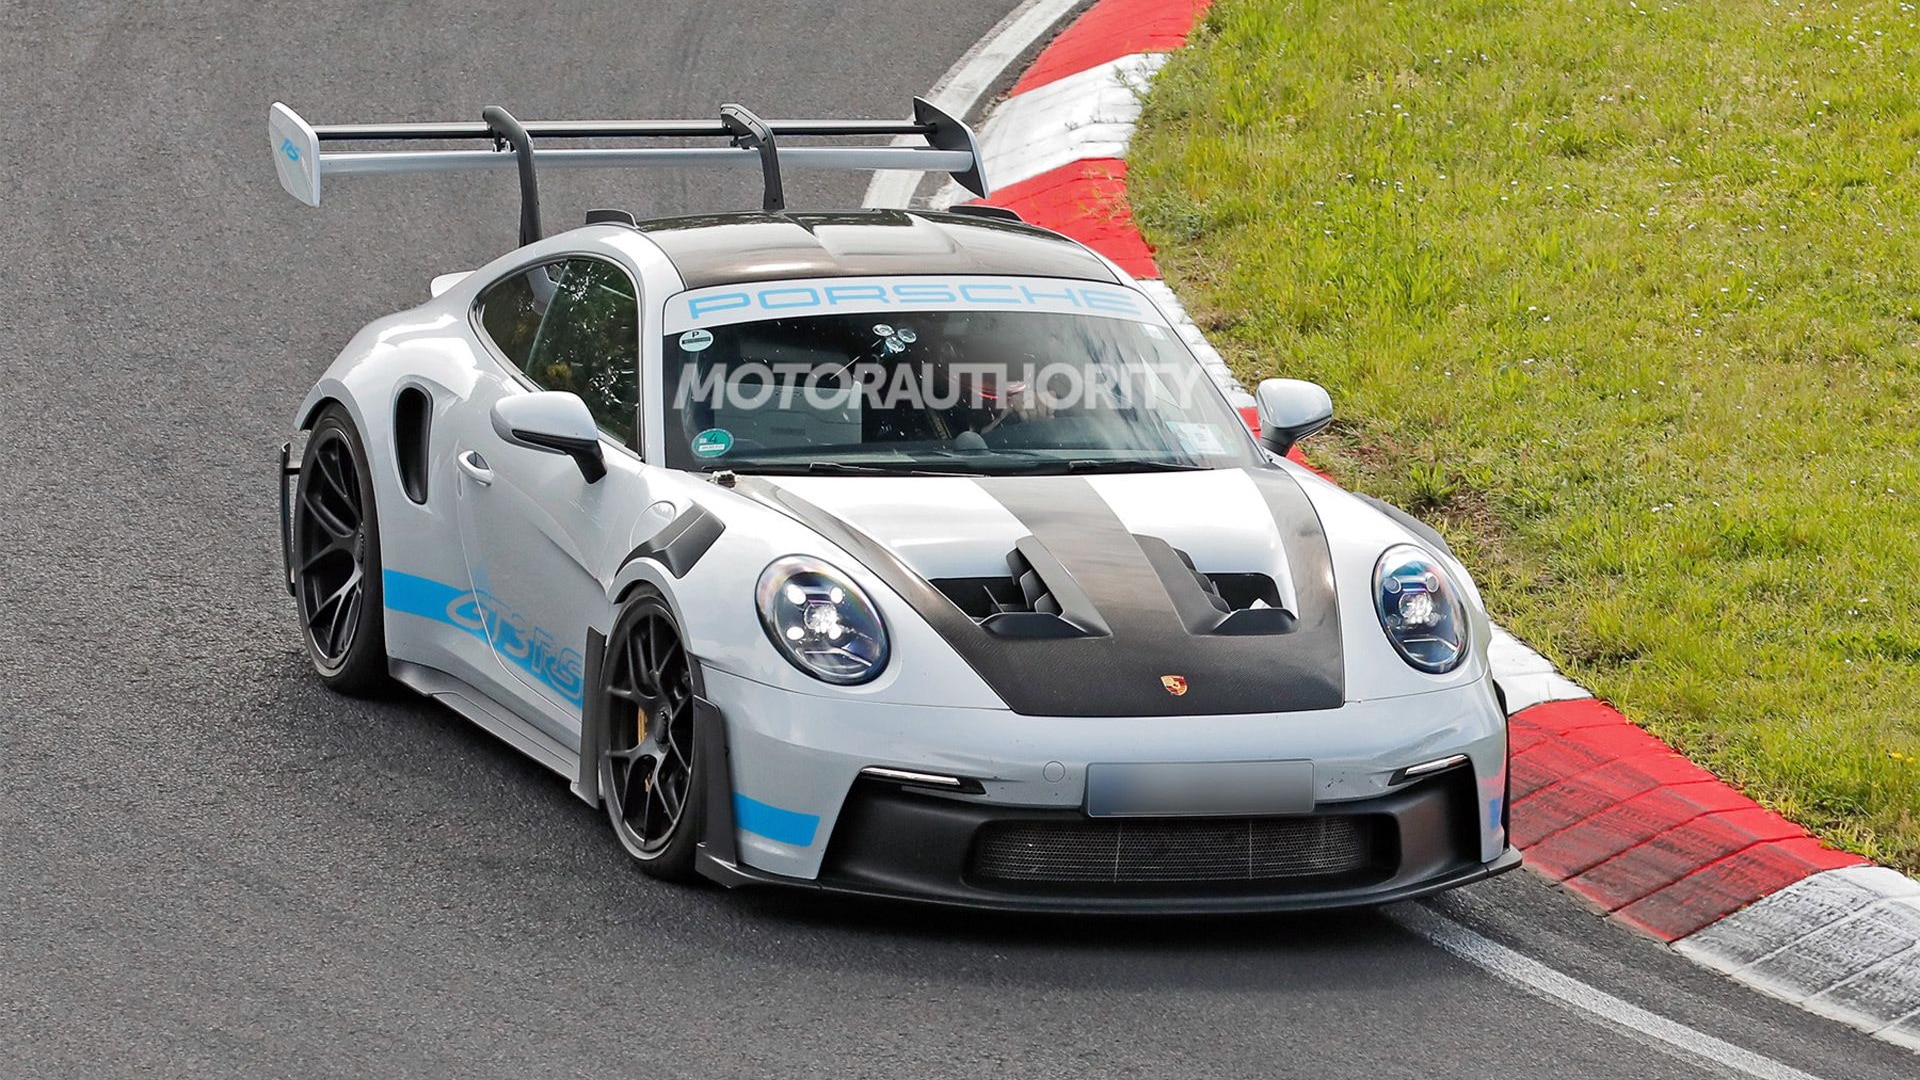 2027 Porsche 911 GT2 RS test mule spy shots - Photo credit: Baldauf